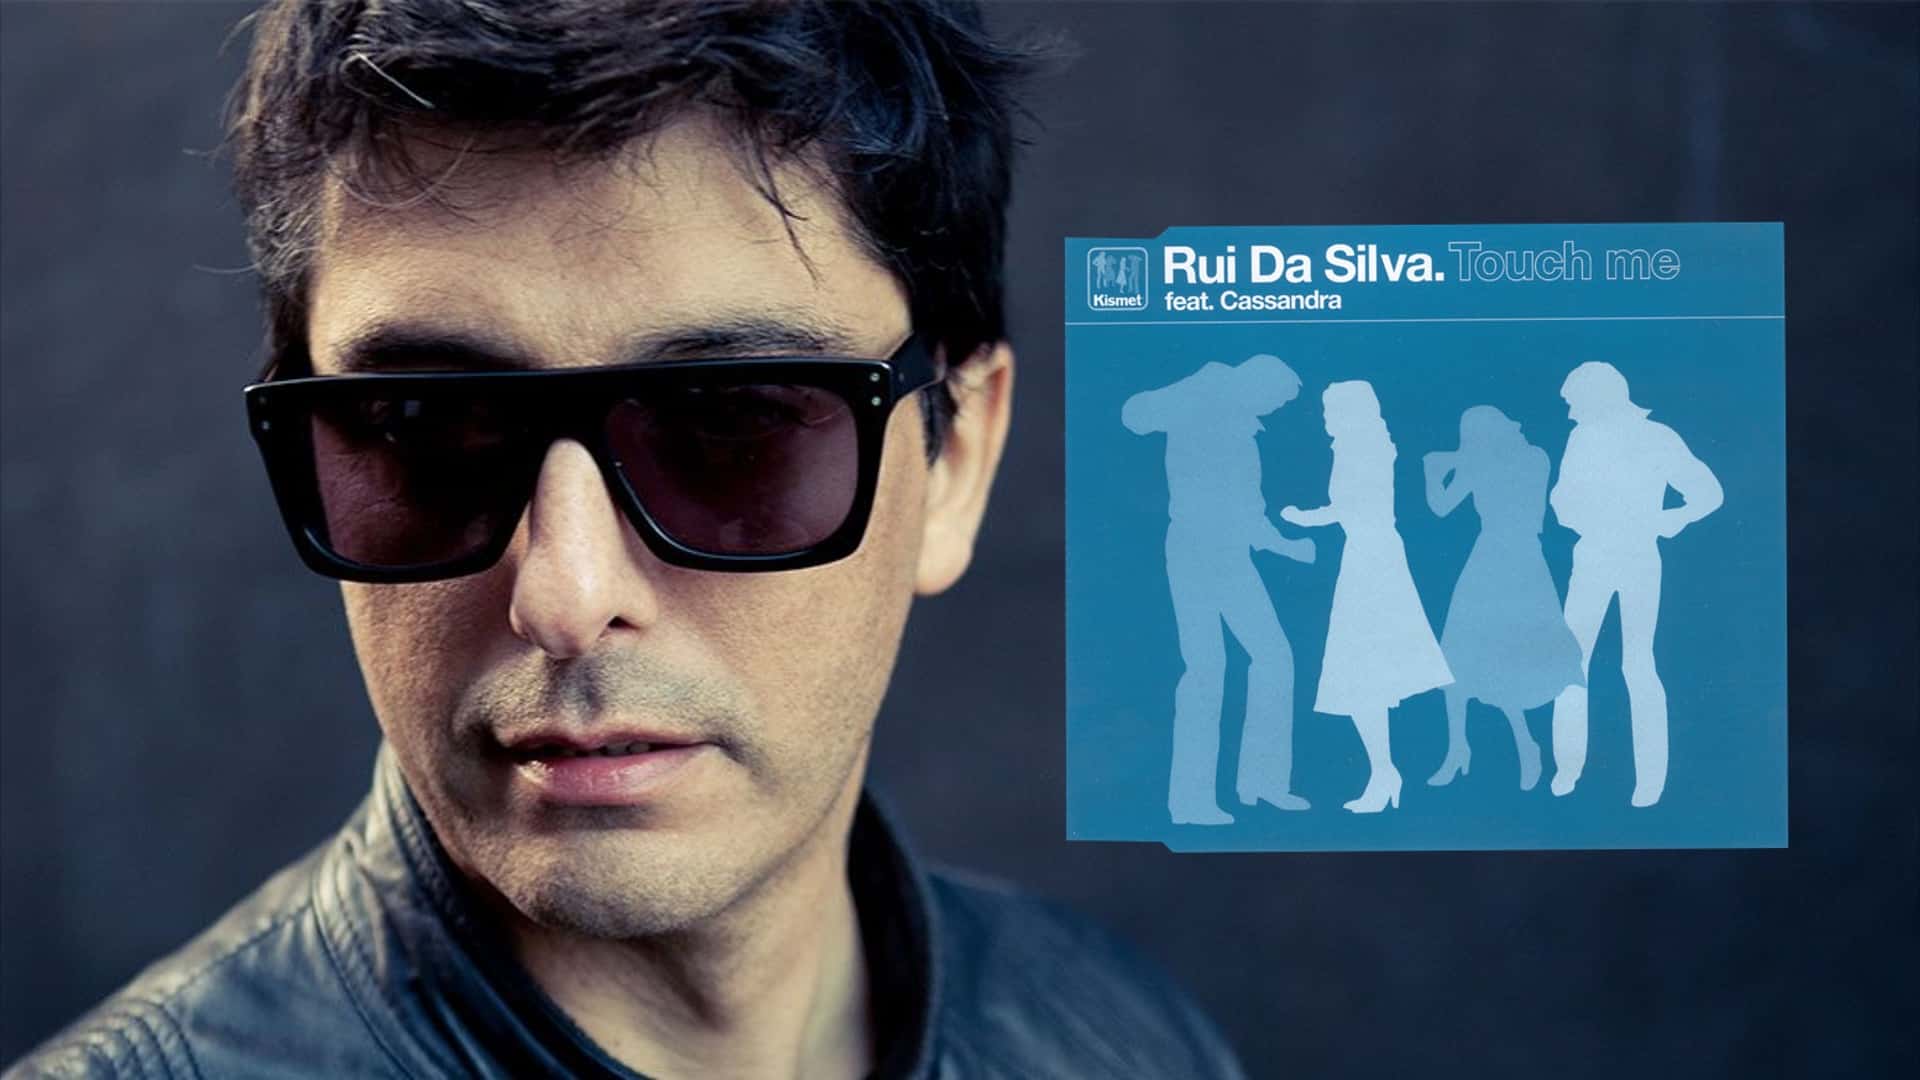 Rui Da Silva